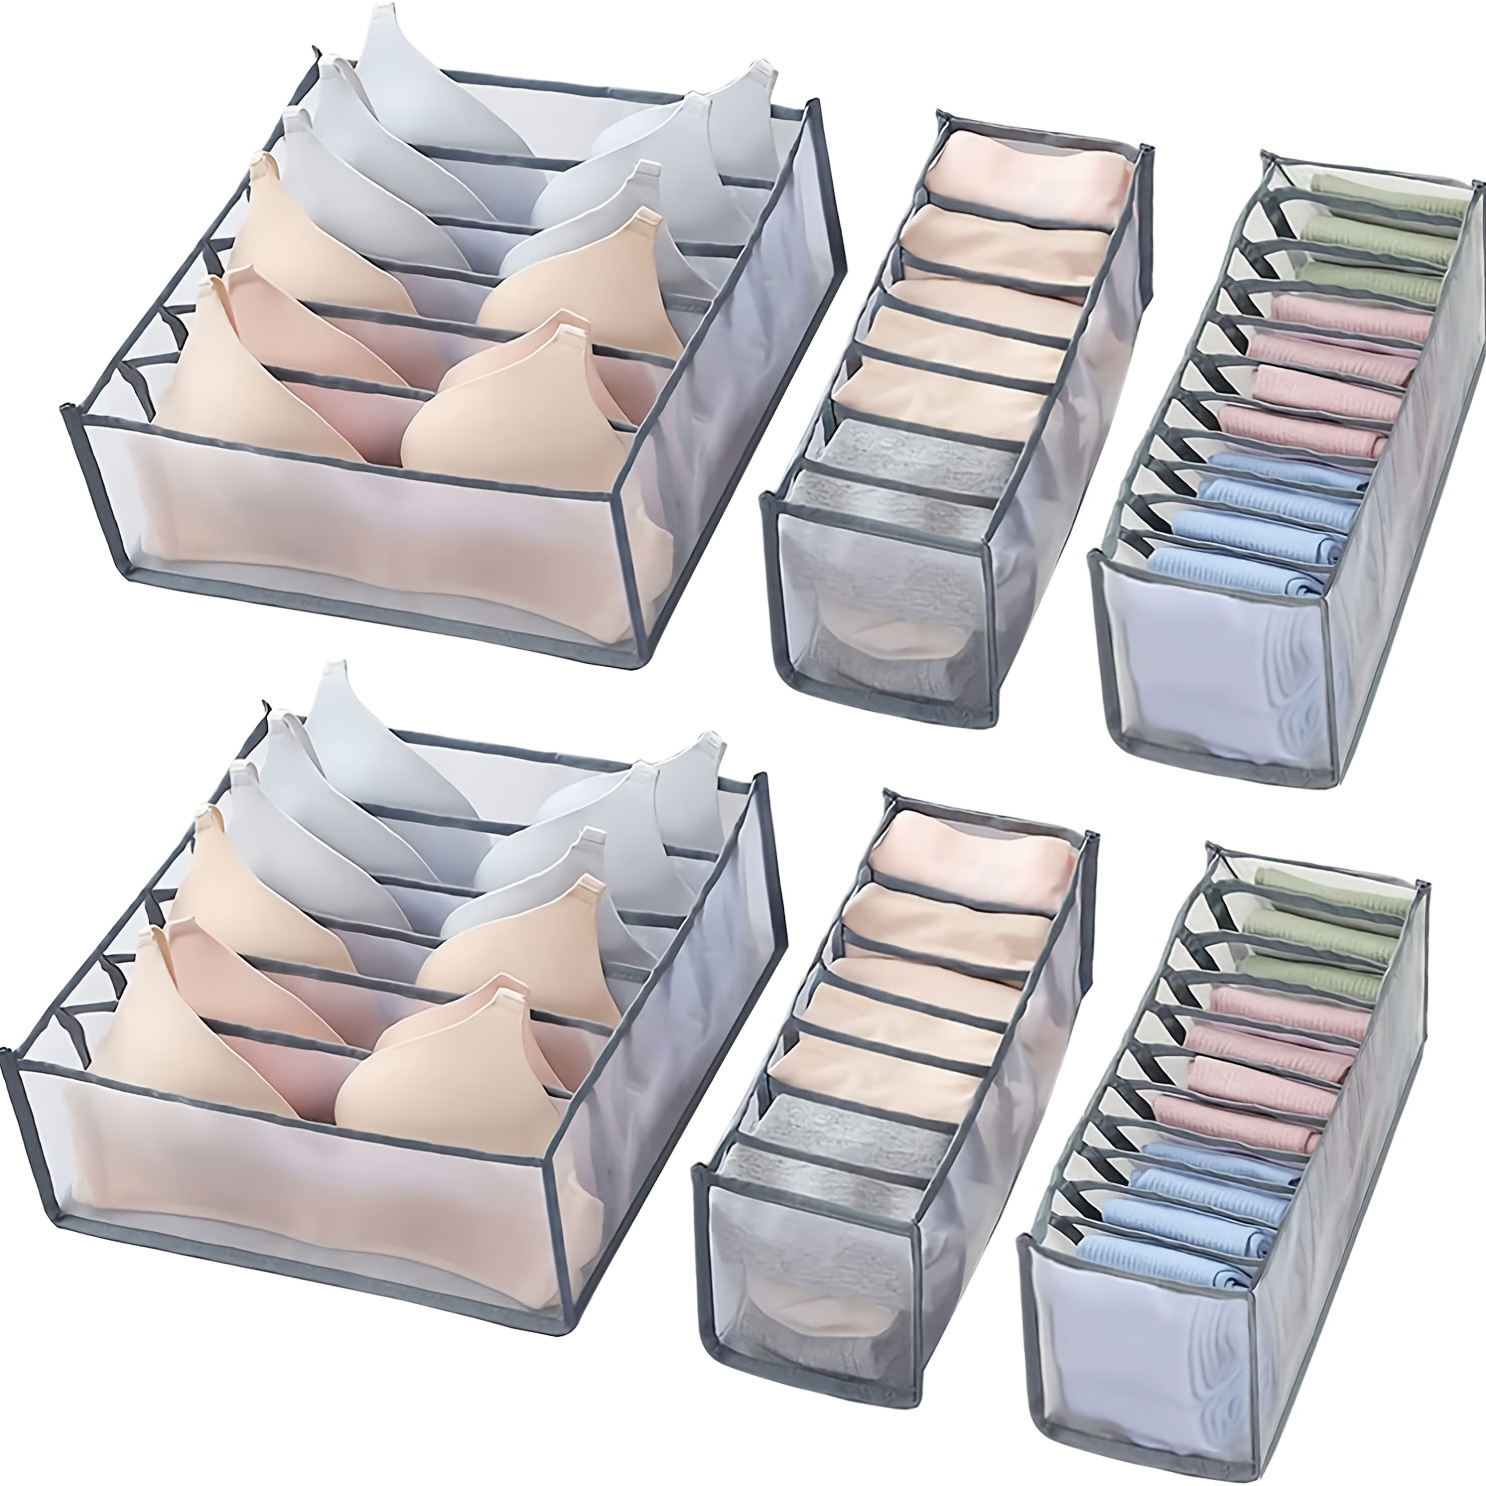 6/7/11 Underwear Bra Socks Ties Drawer Storage Organizer Boxes